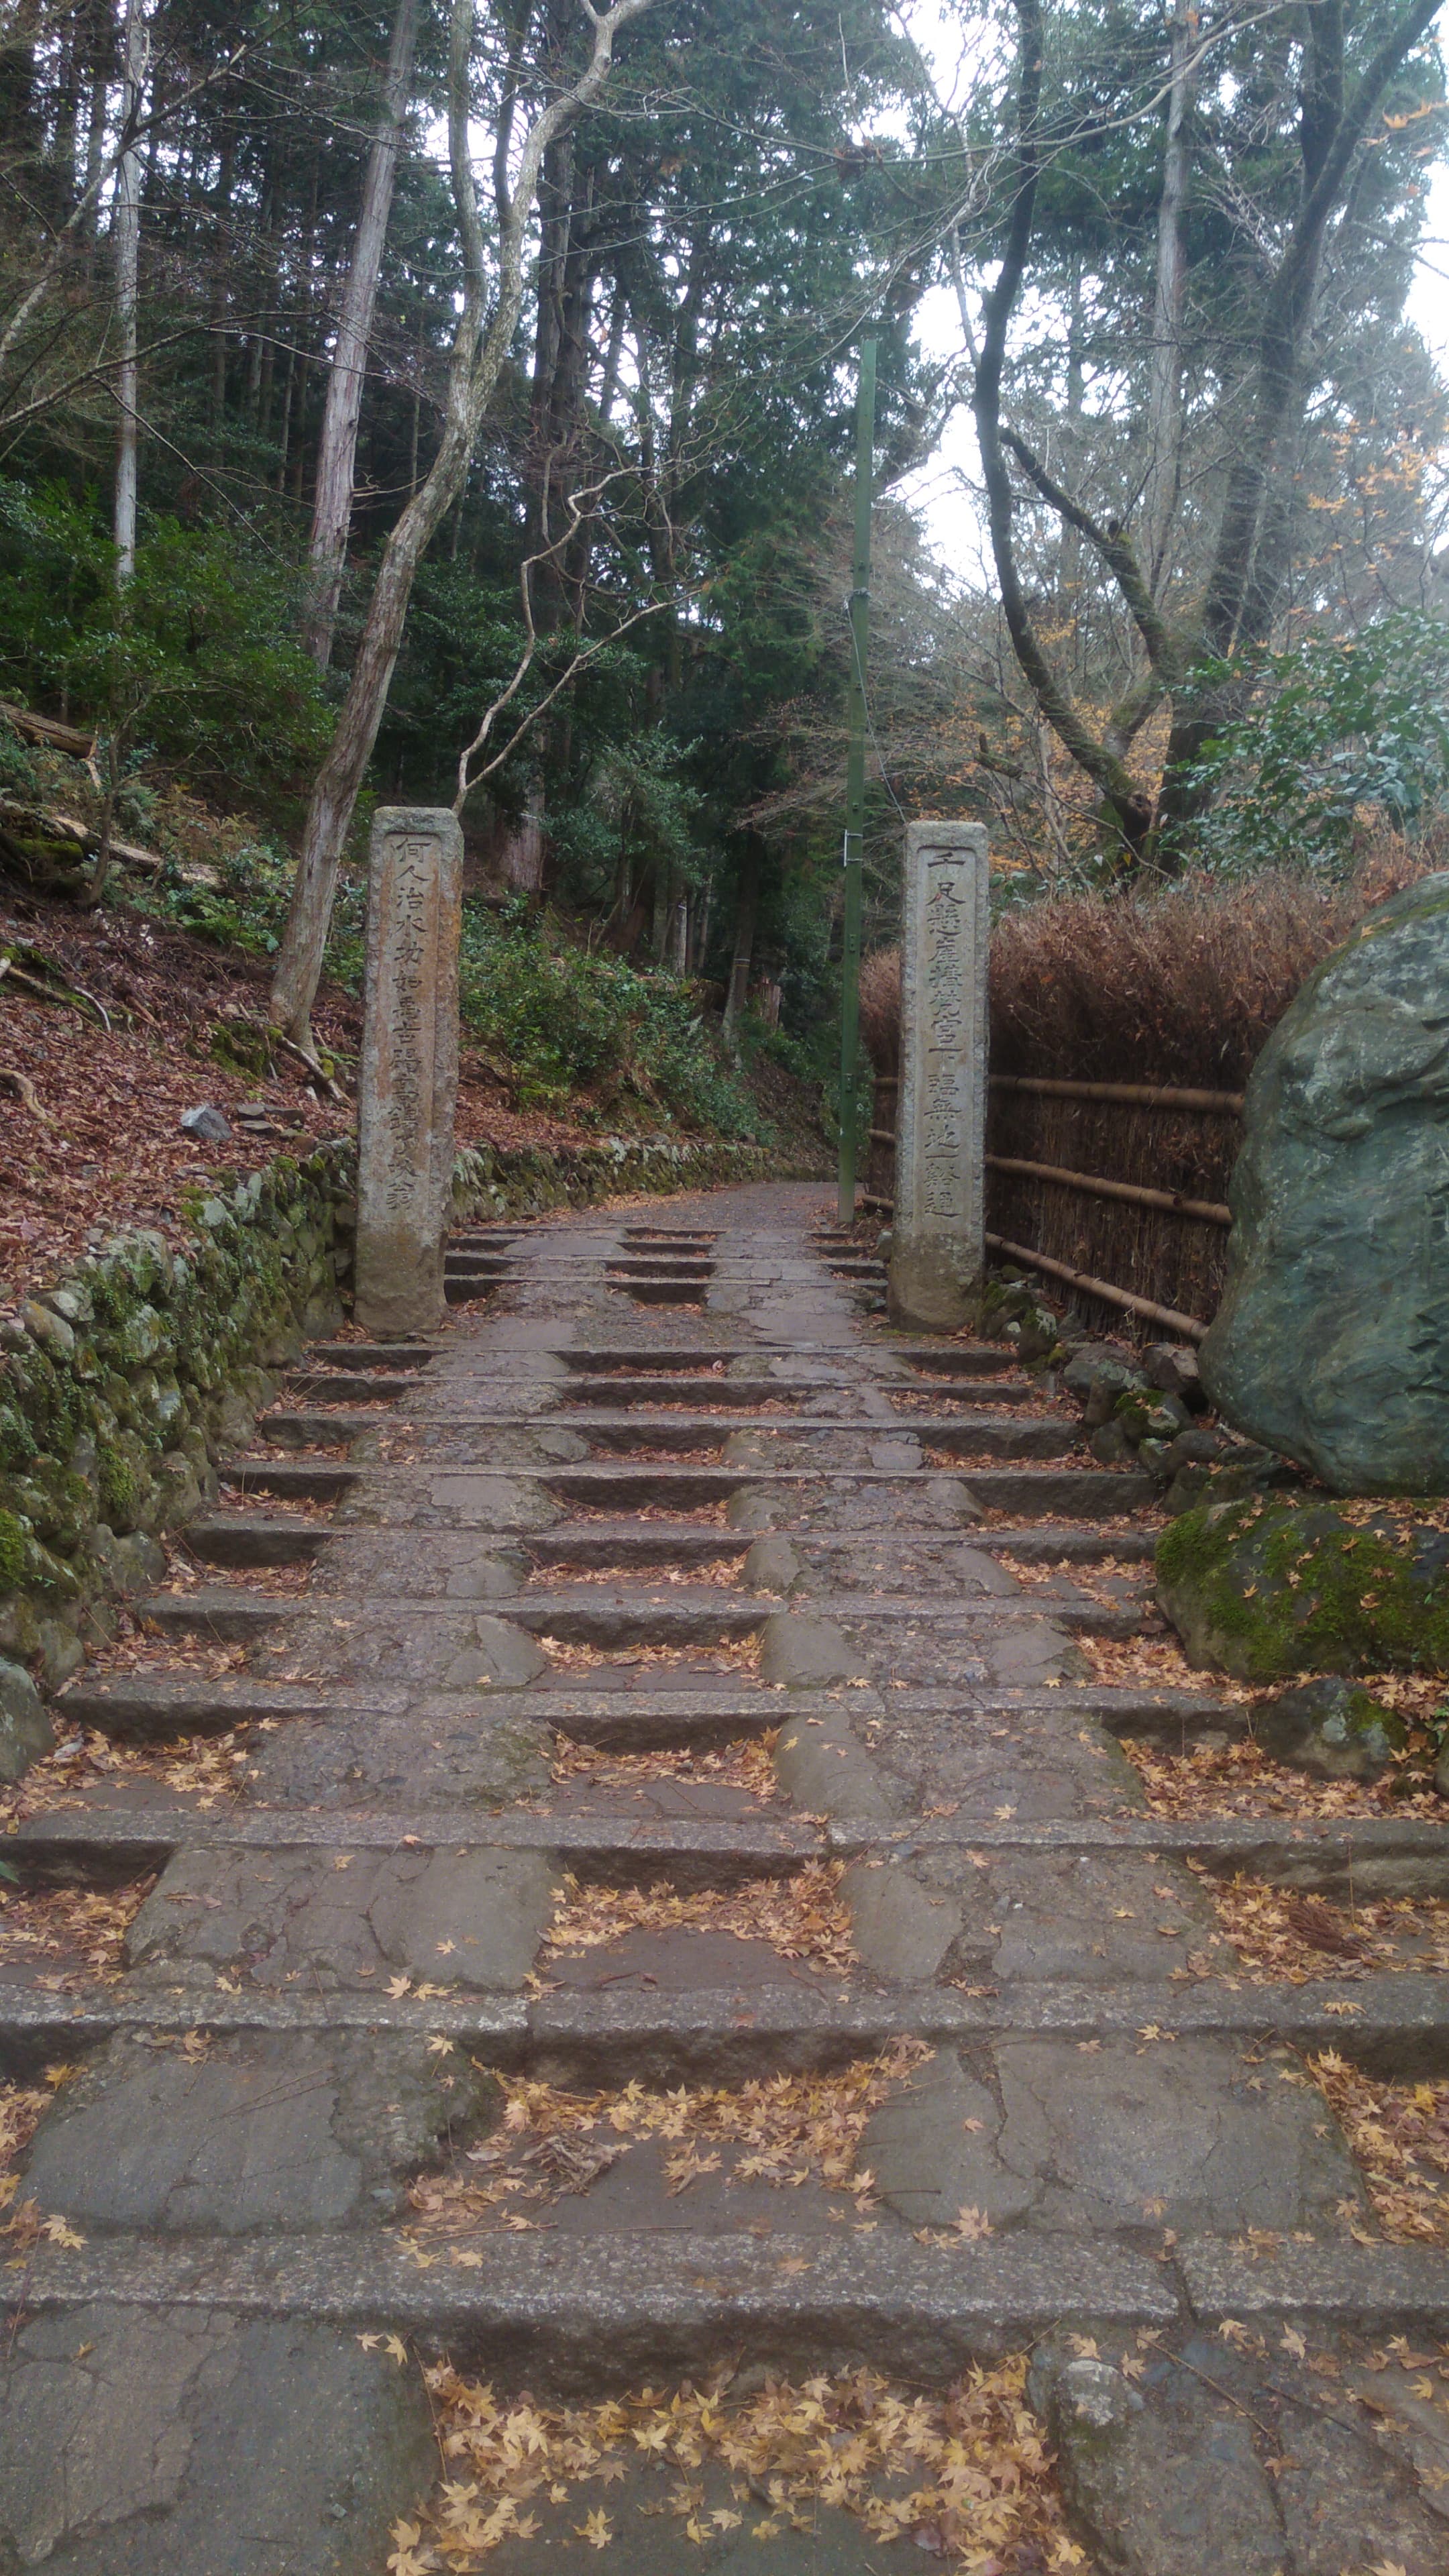 Escaliers pour aller au temple.